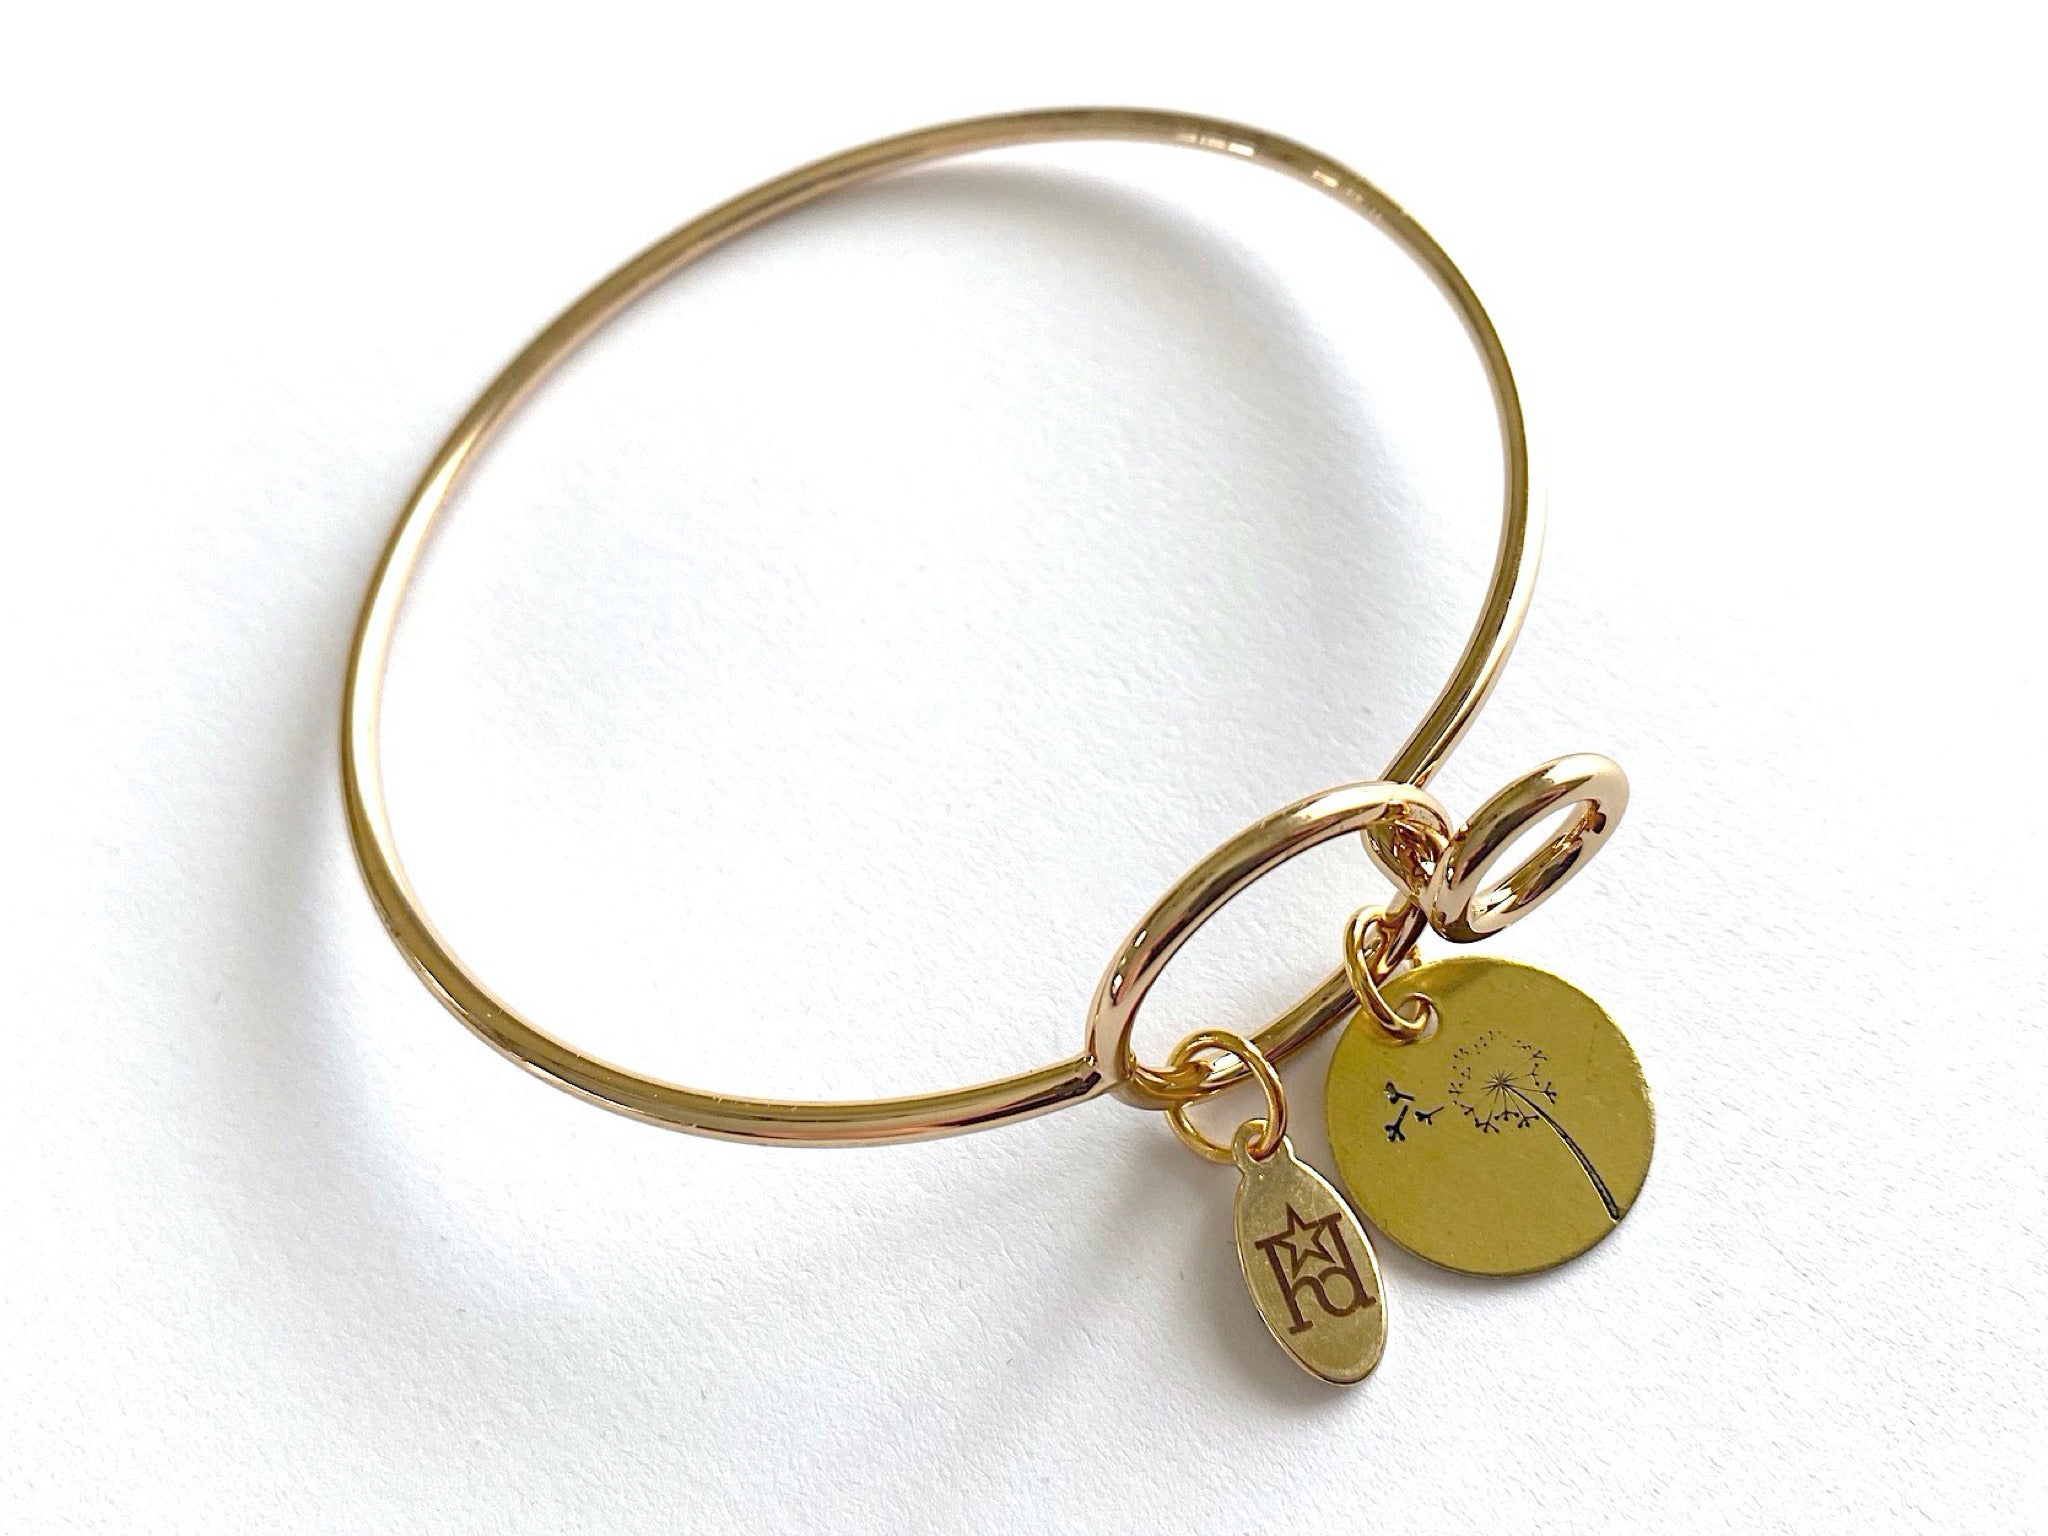 Dandelion Gold Bangle Bracelet – Hope Design Ltd